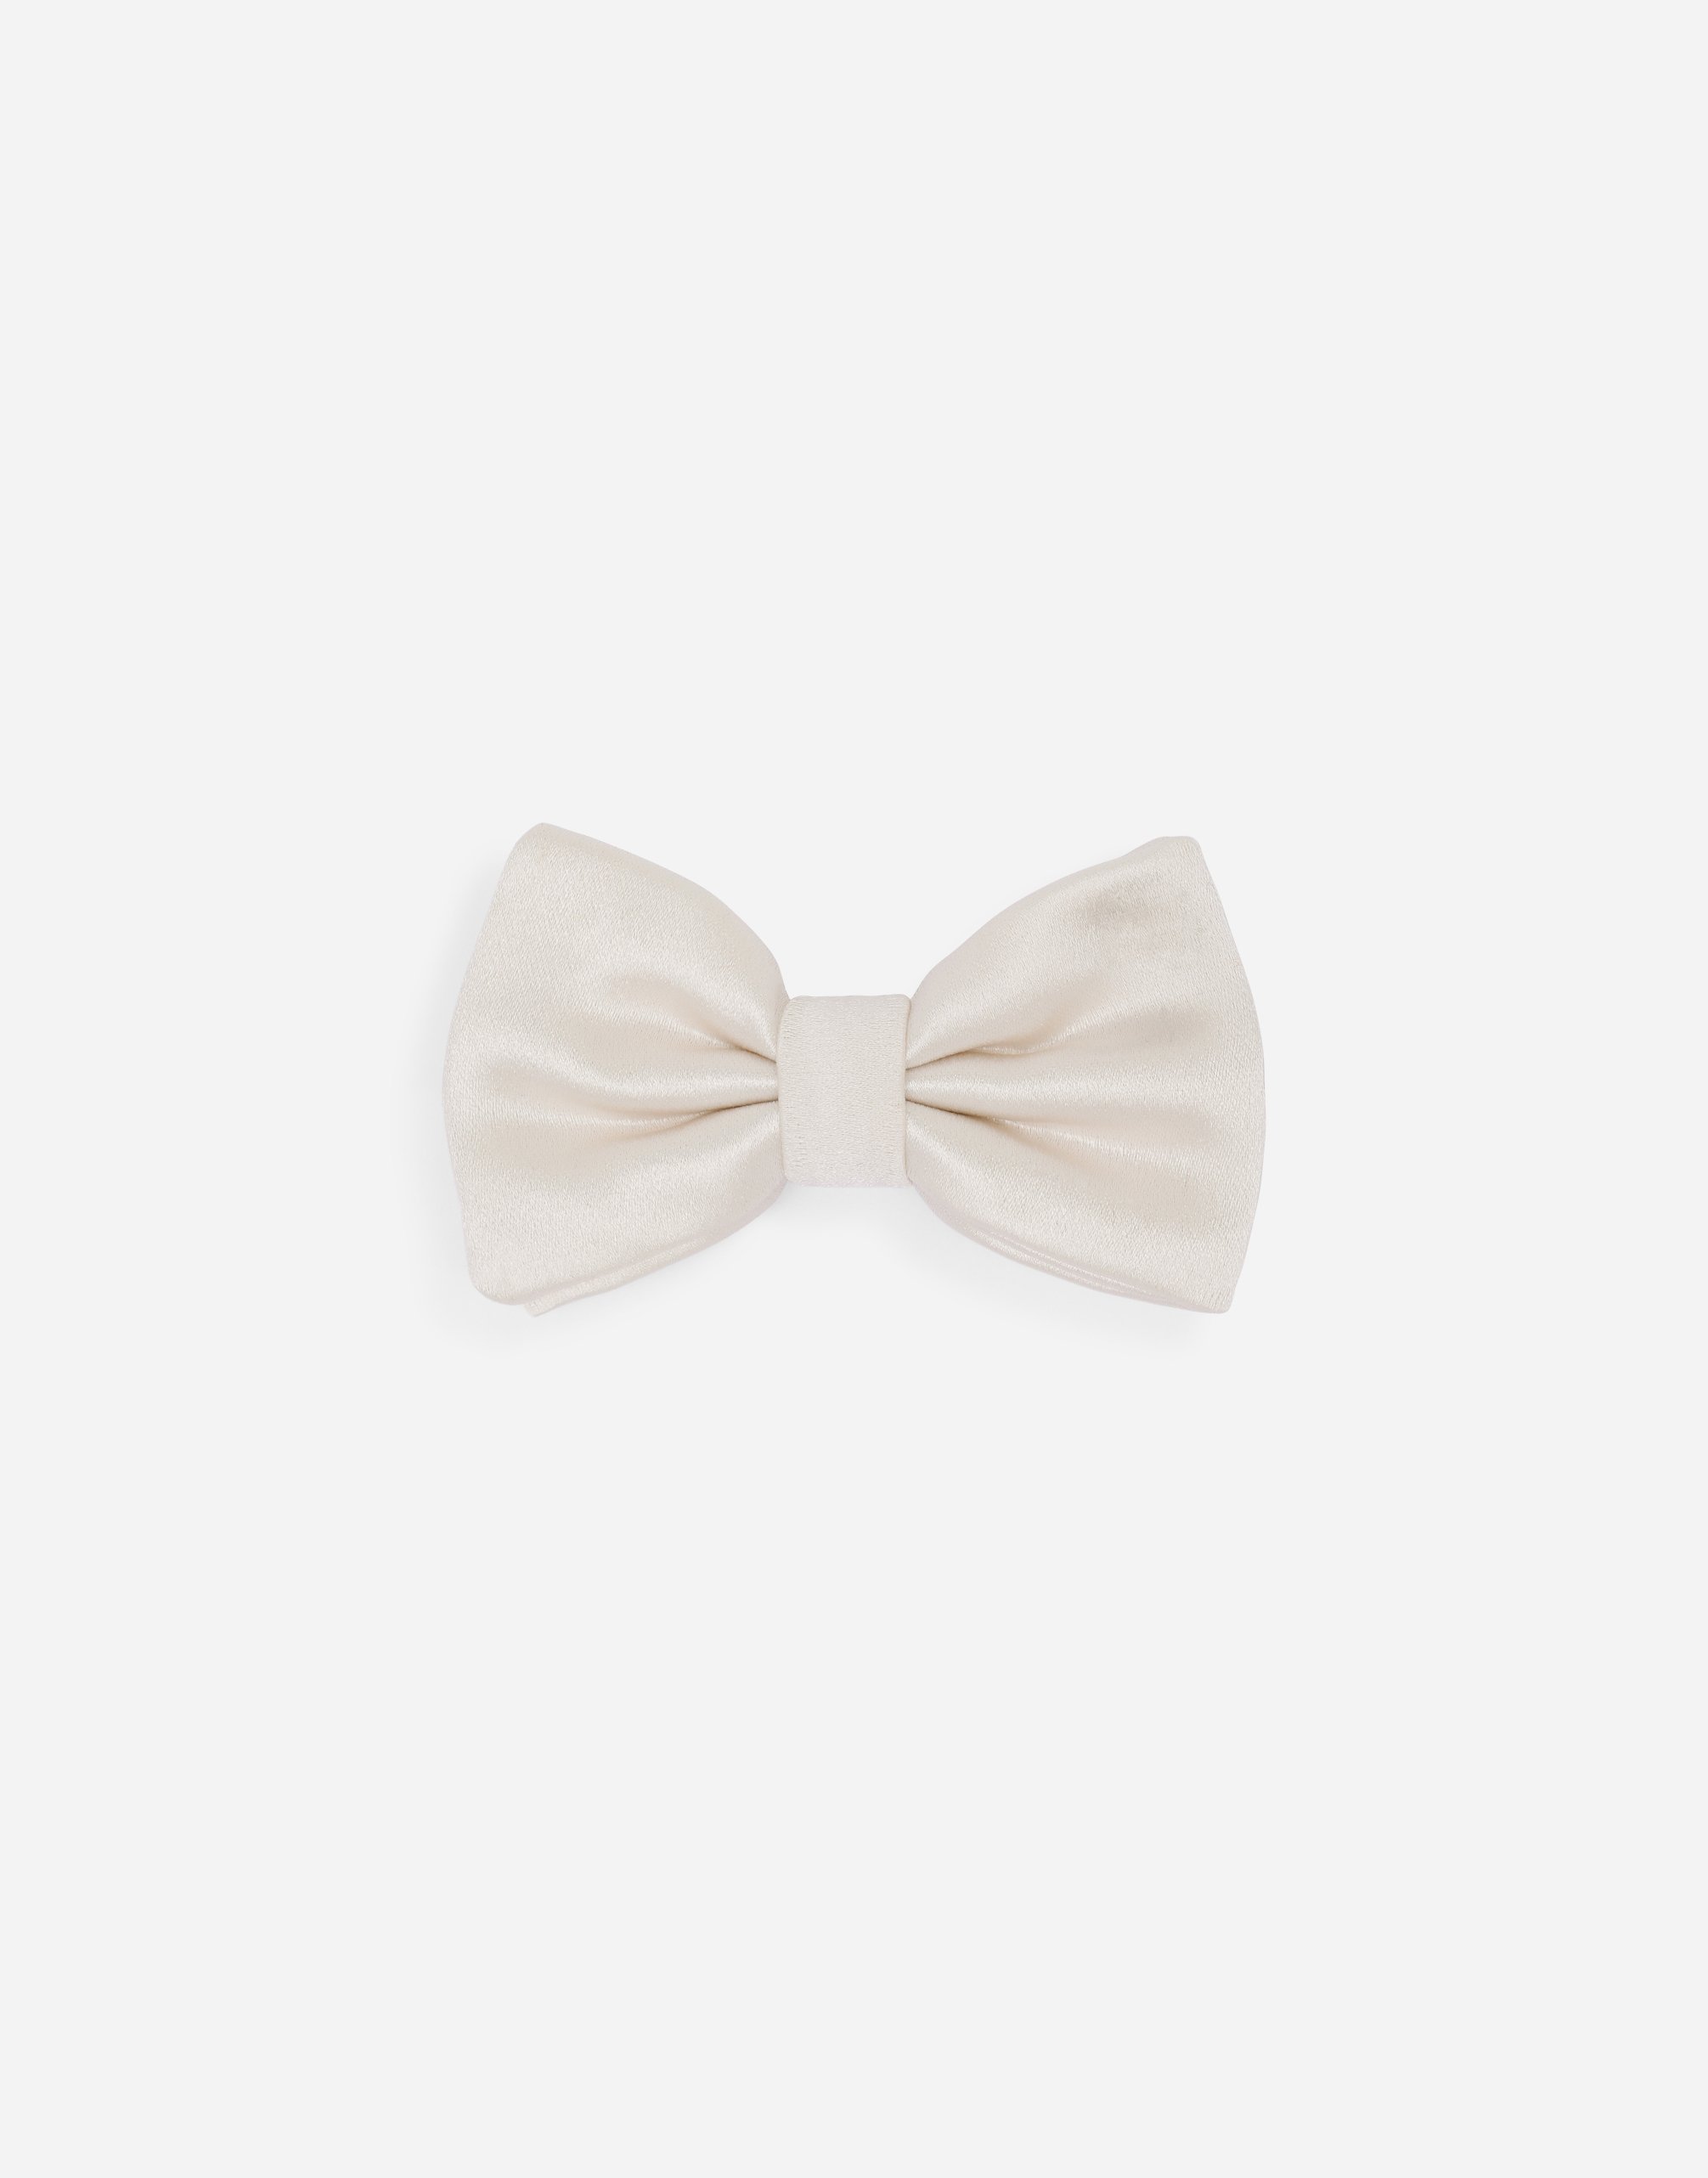 Silk duchesse bow tie in White